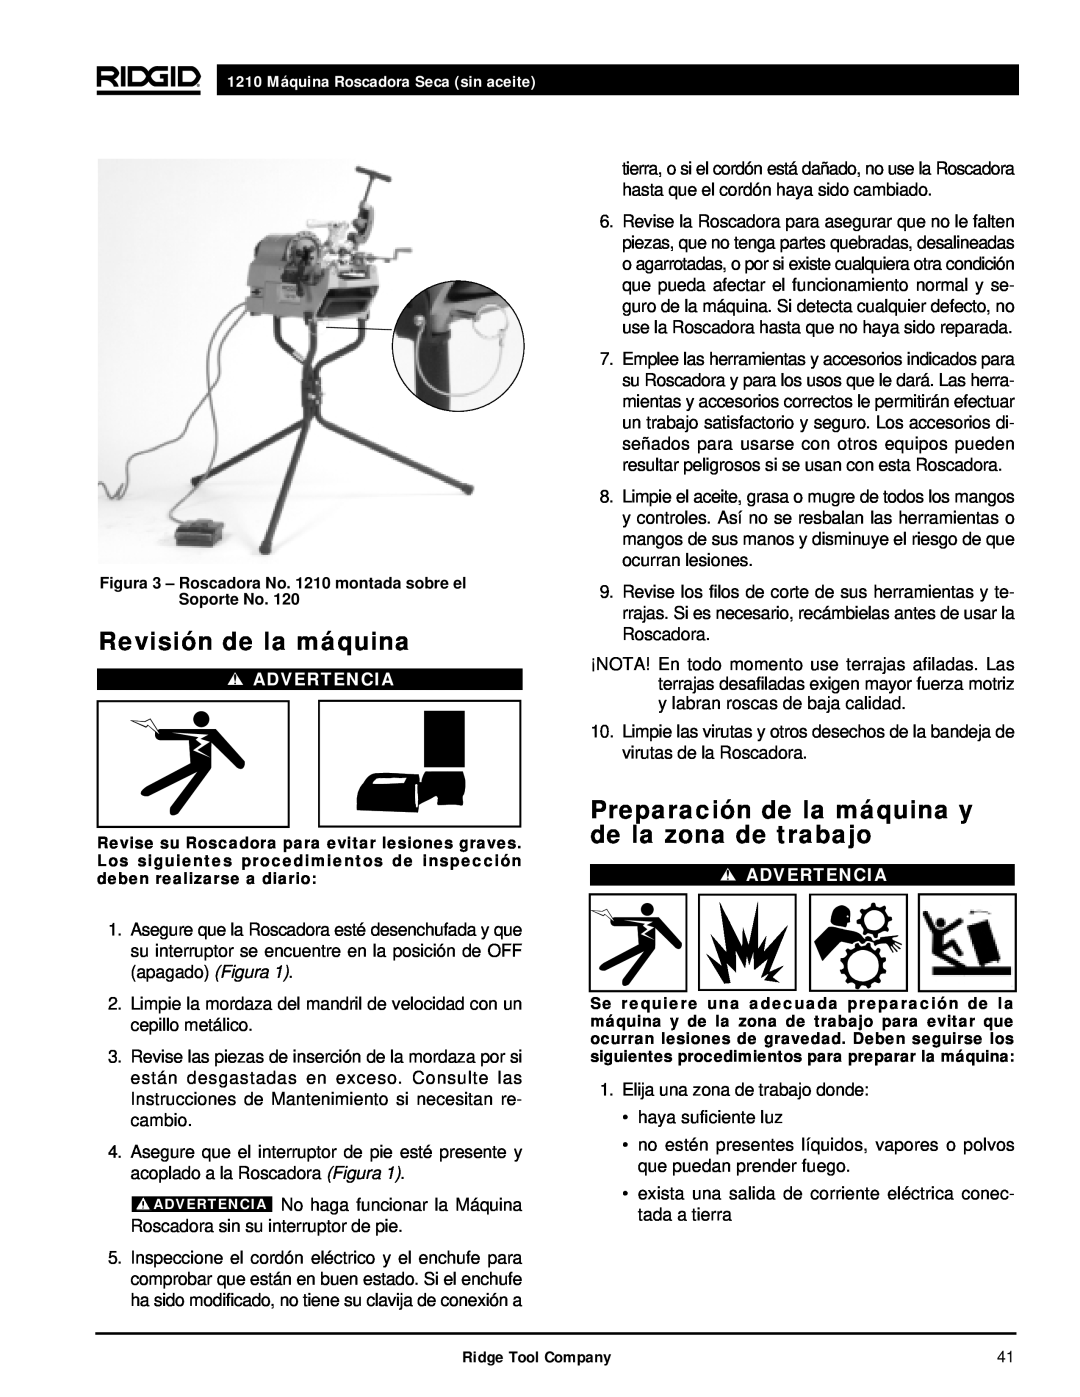 RIDGID 1210 manual Revisión de la máquina, Preparación de la máquina y de la zona de trabajo, Advertencia 